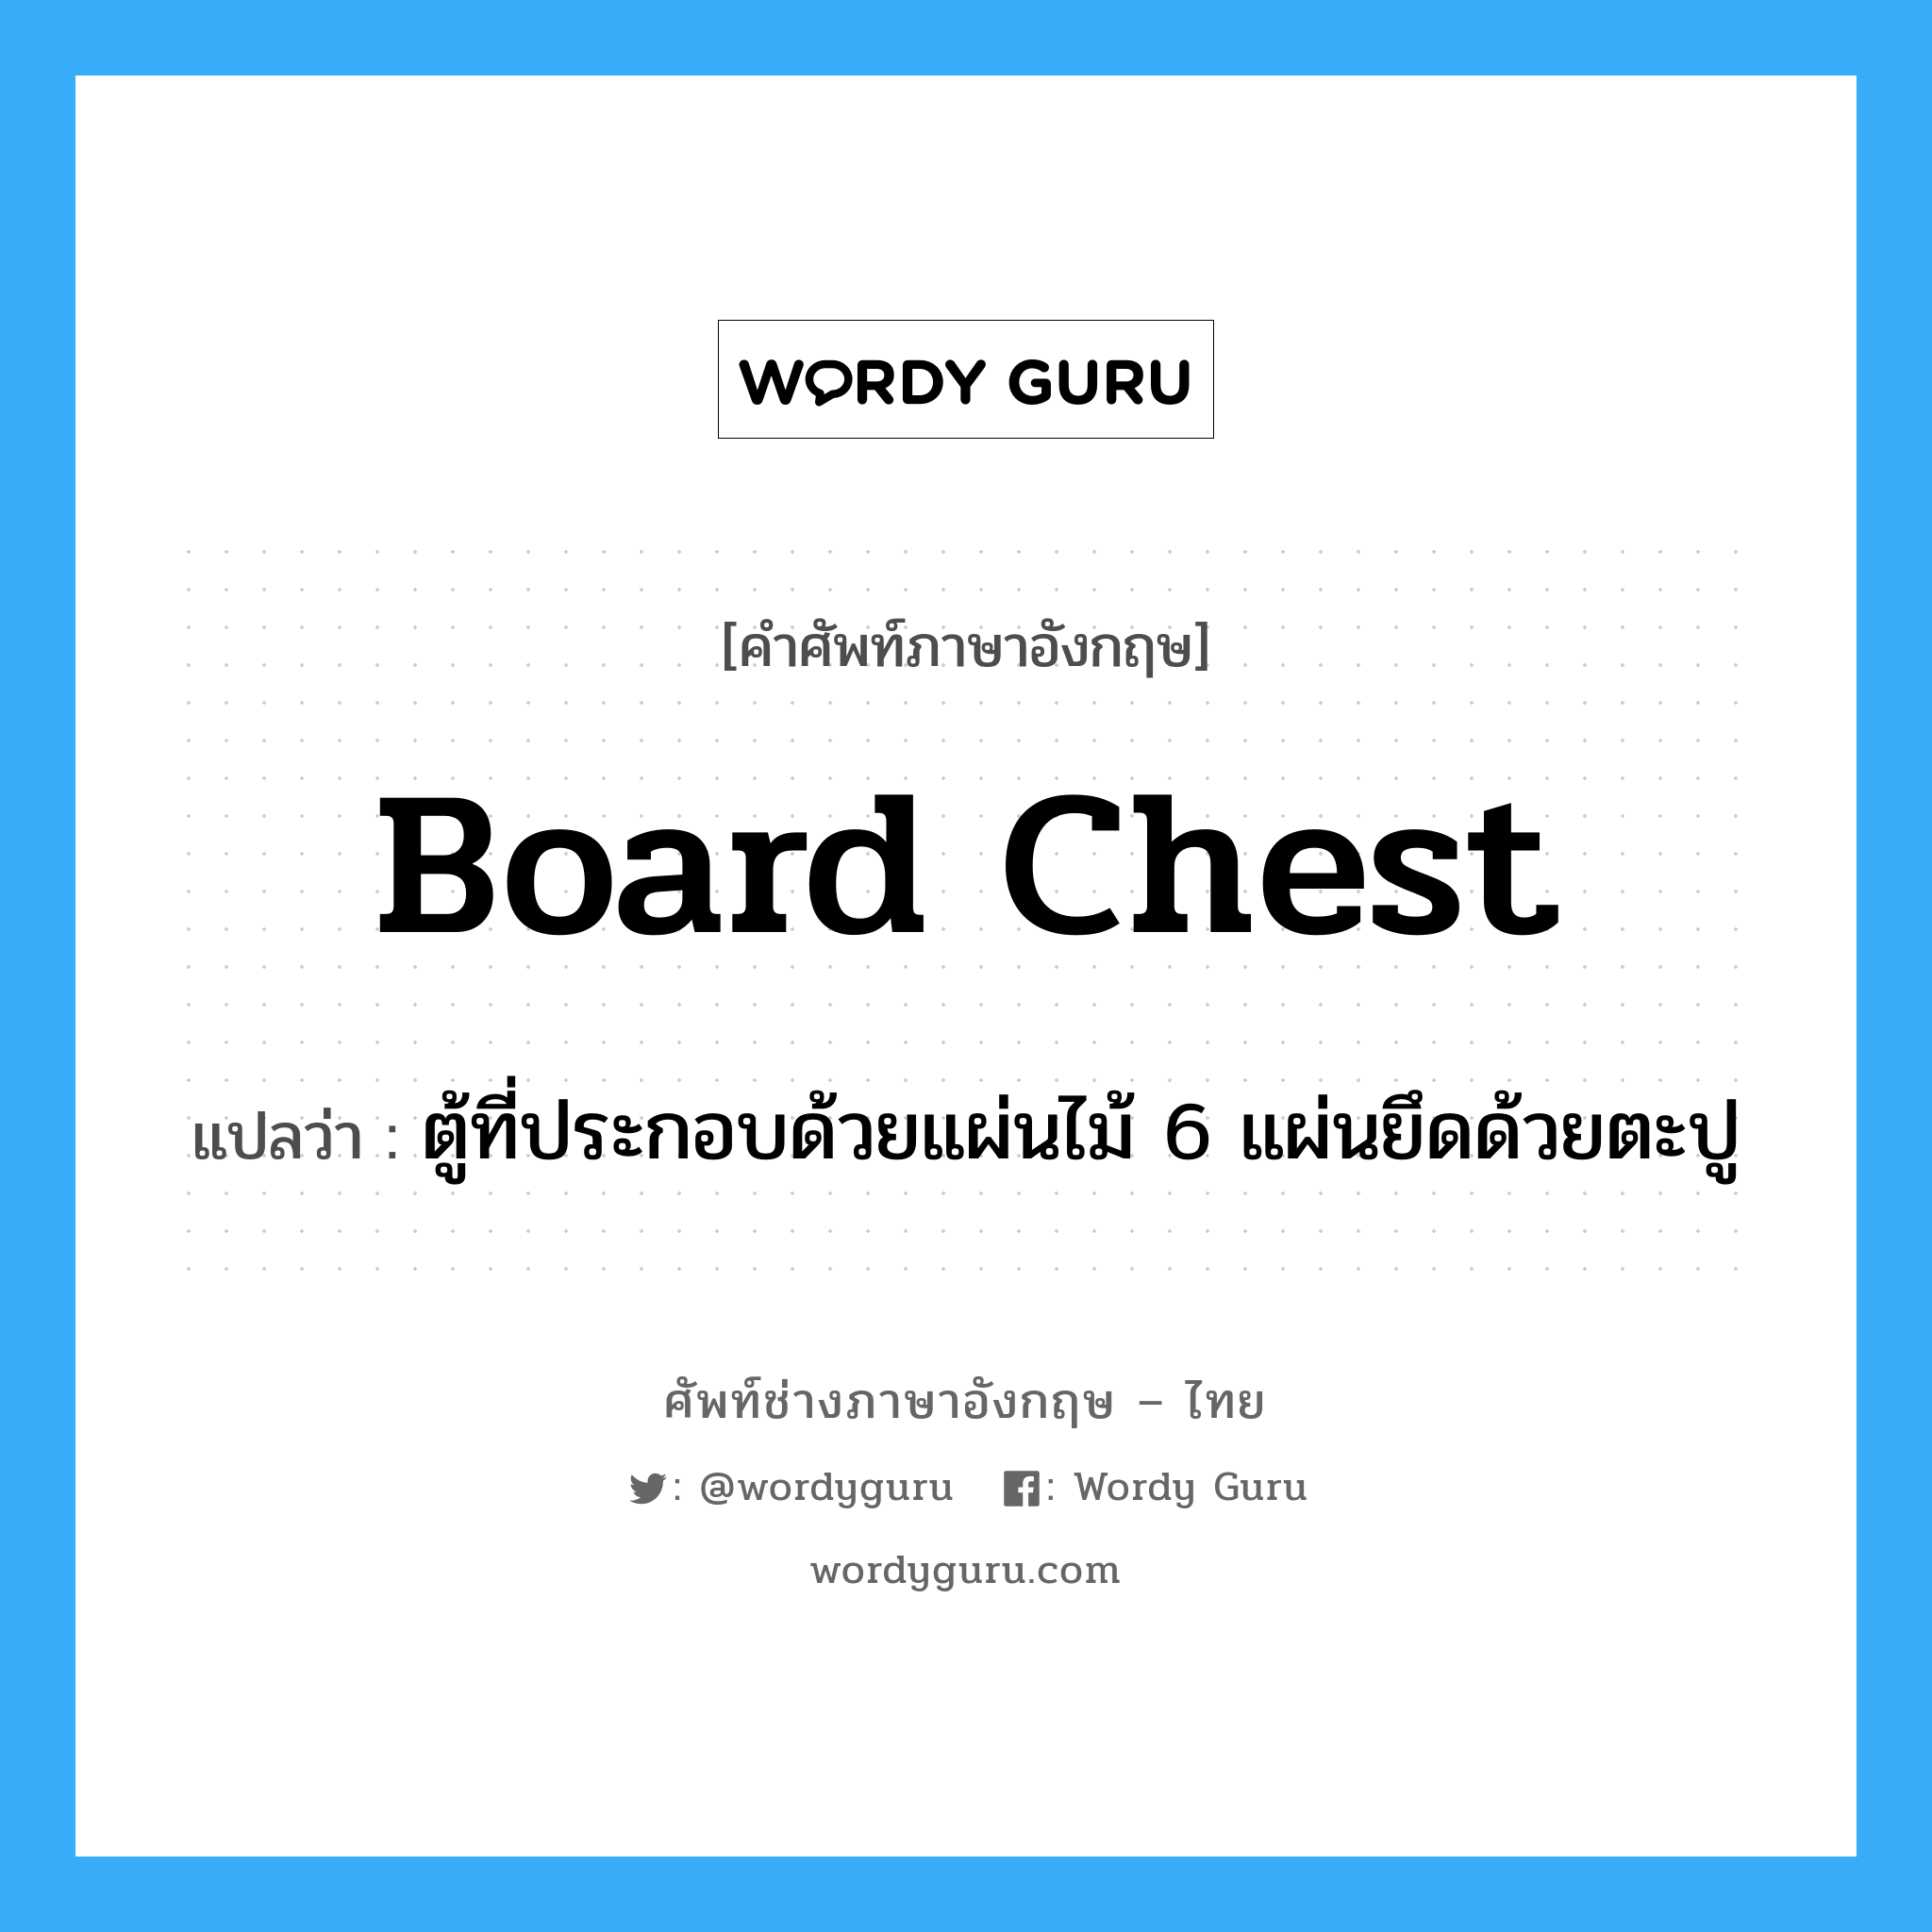 board chest แปลว่า?, คำศัพท์ช่างภาษาอังกฤษ - ไทย board chest คำศัพท์ภาษาอังกฤษ board chest แปลว่า ตู้ที่ประกอบด้วยแผ่นไม้ 6 แผ่นยึดด้วยตะปู